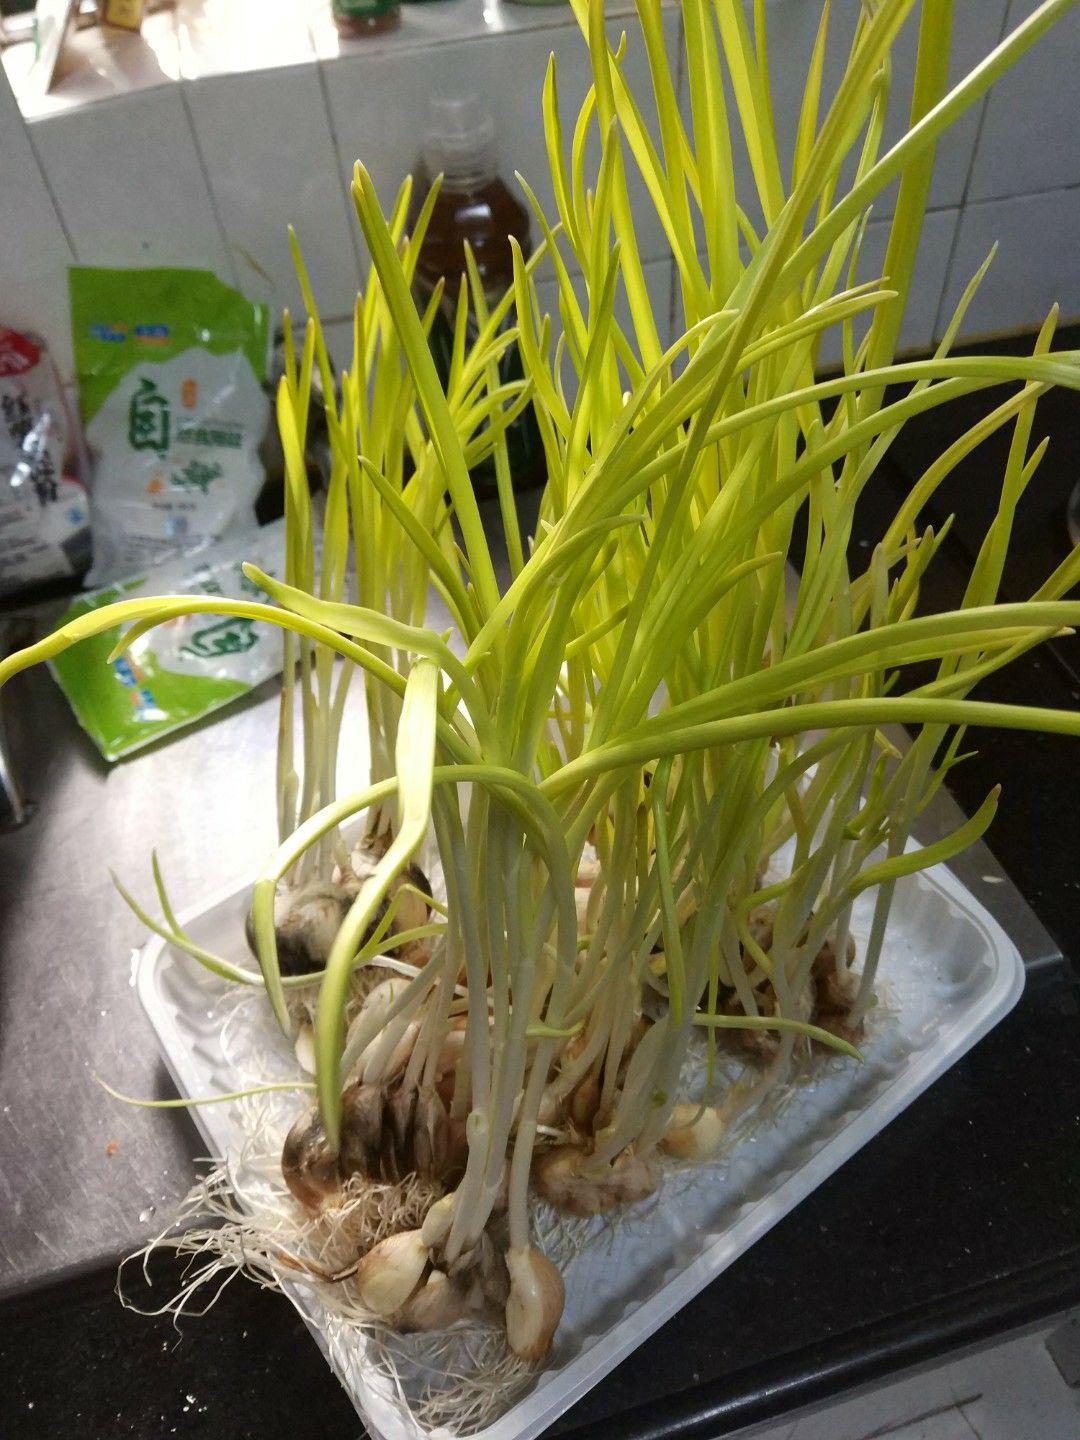 大蒜记录植物生长过程-图库-五毛网